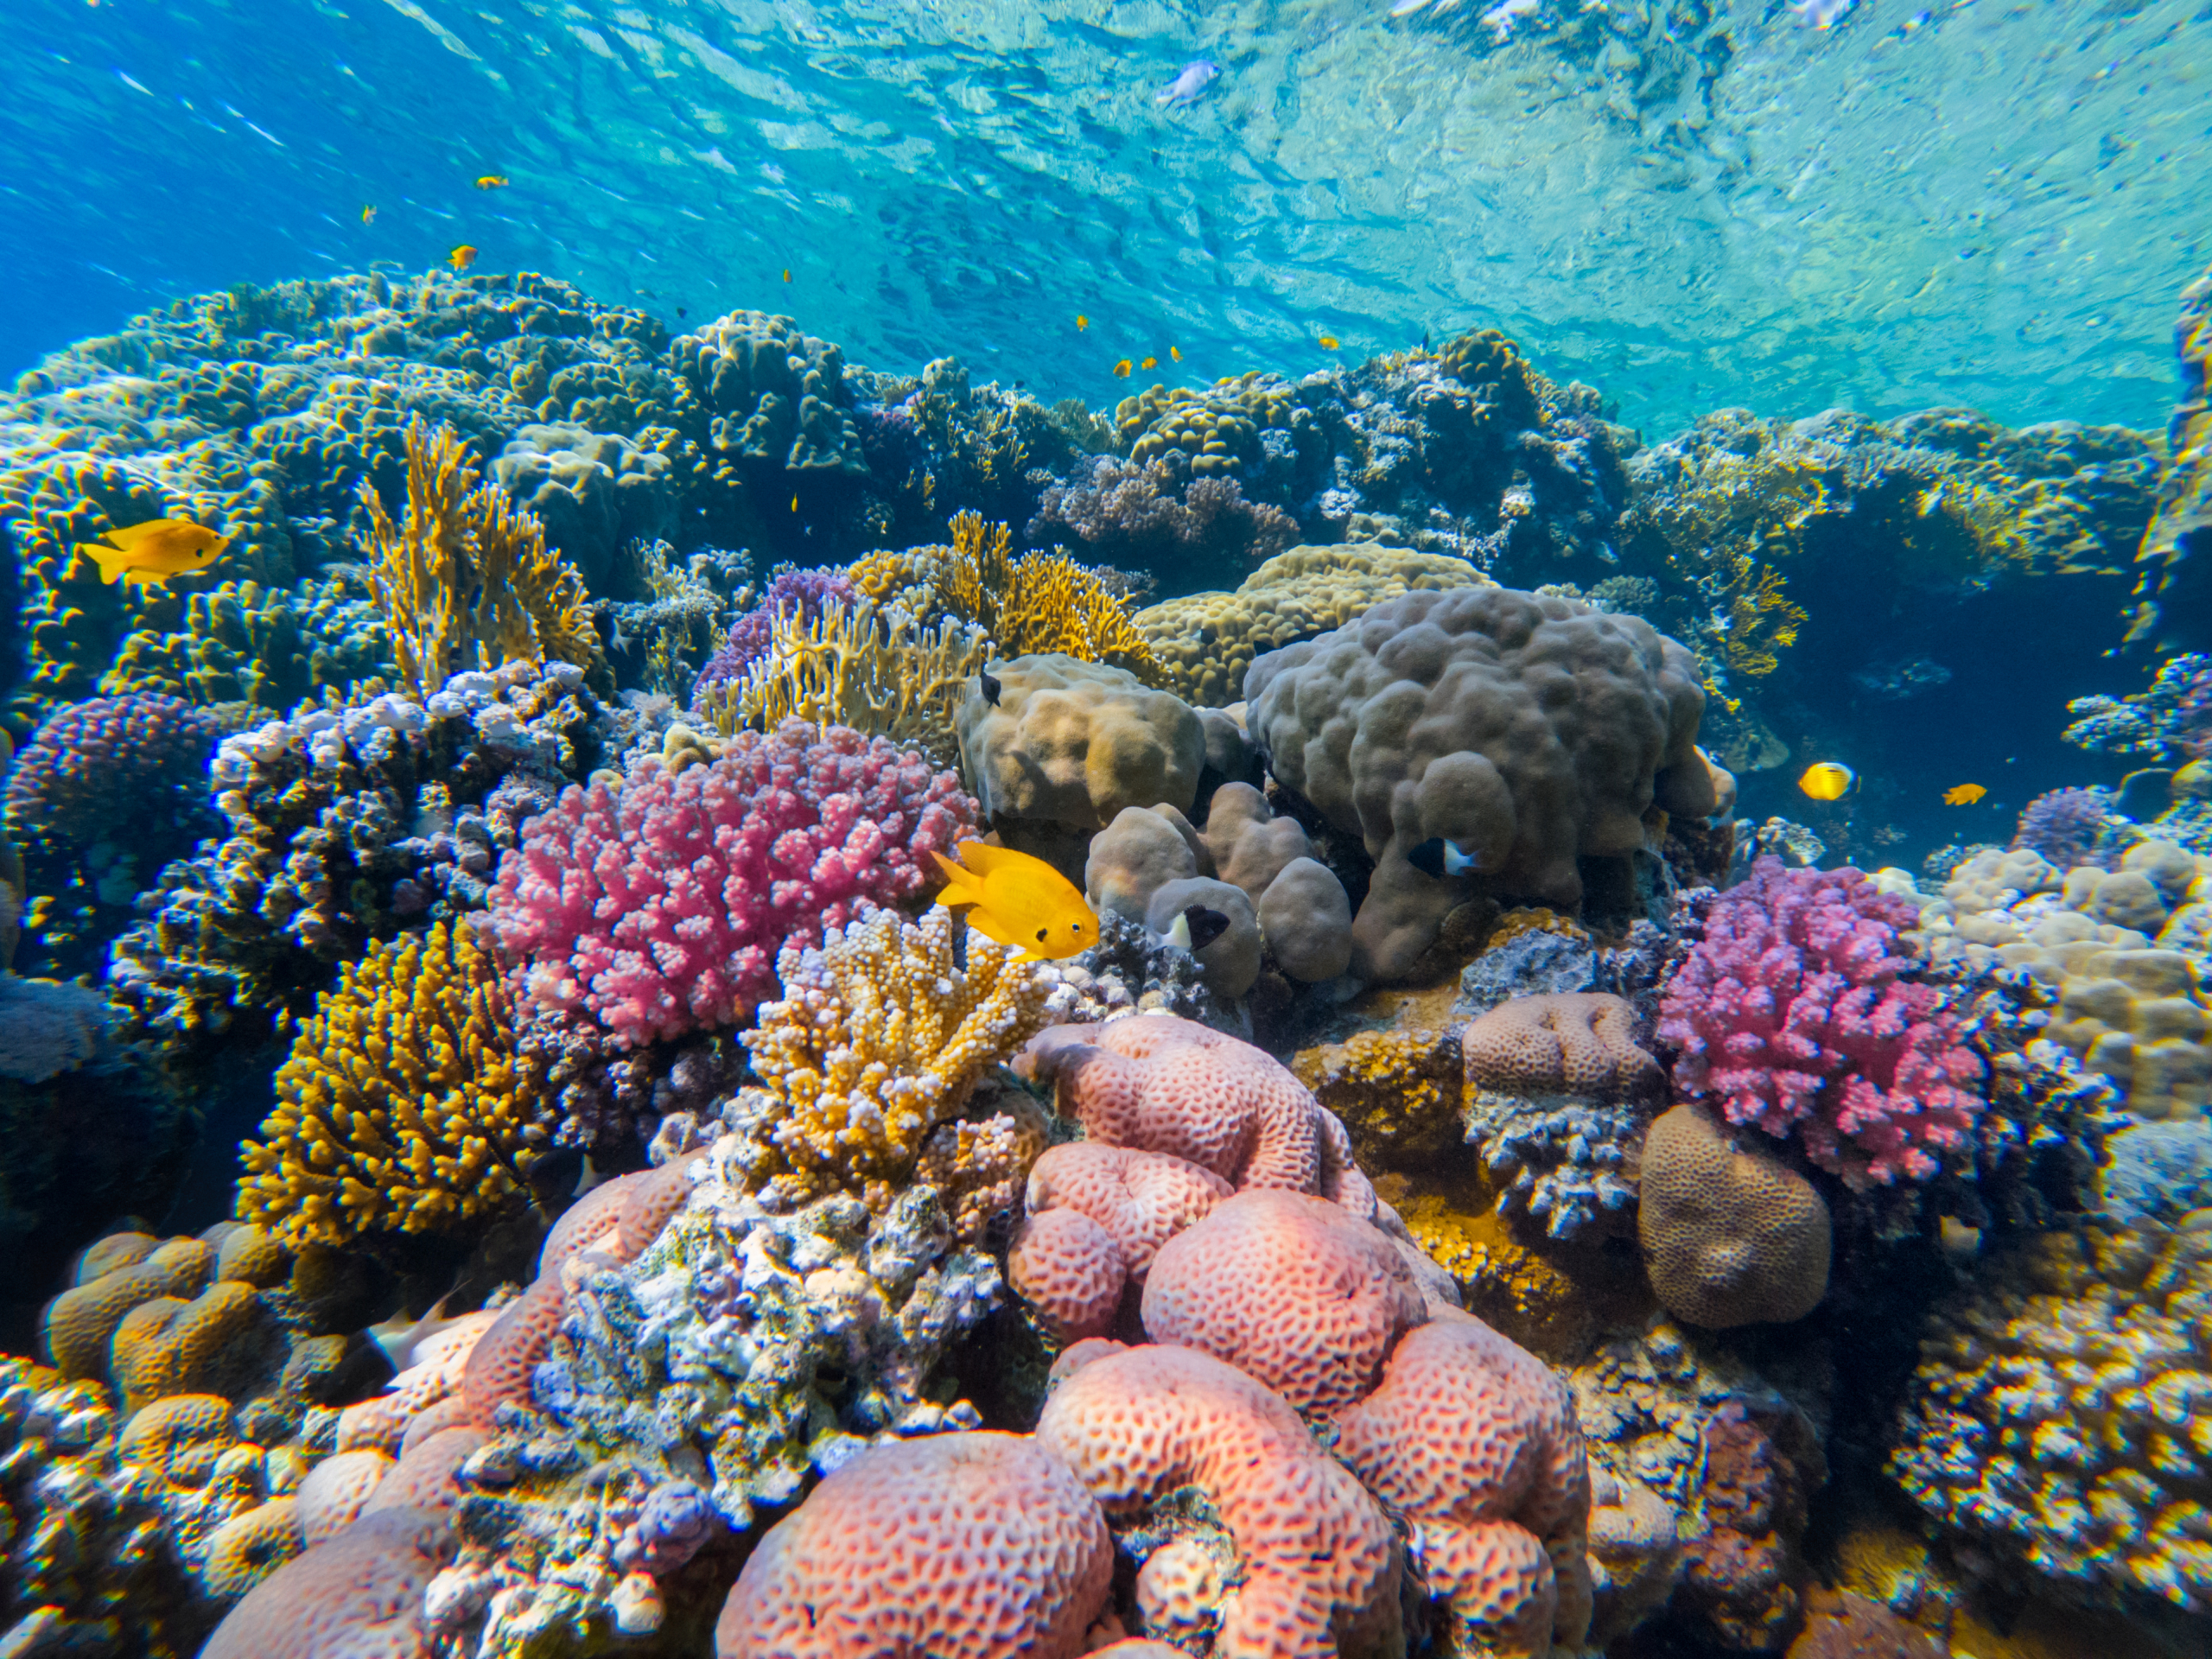 Kako korali preživljavaju klimatske promene? Imaju "pomoćnika"